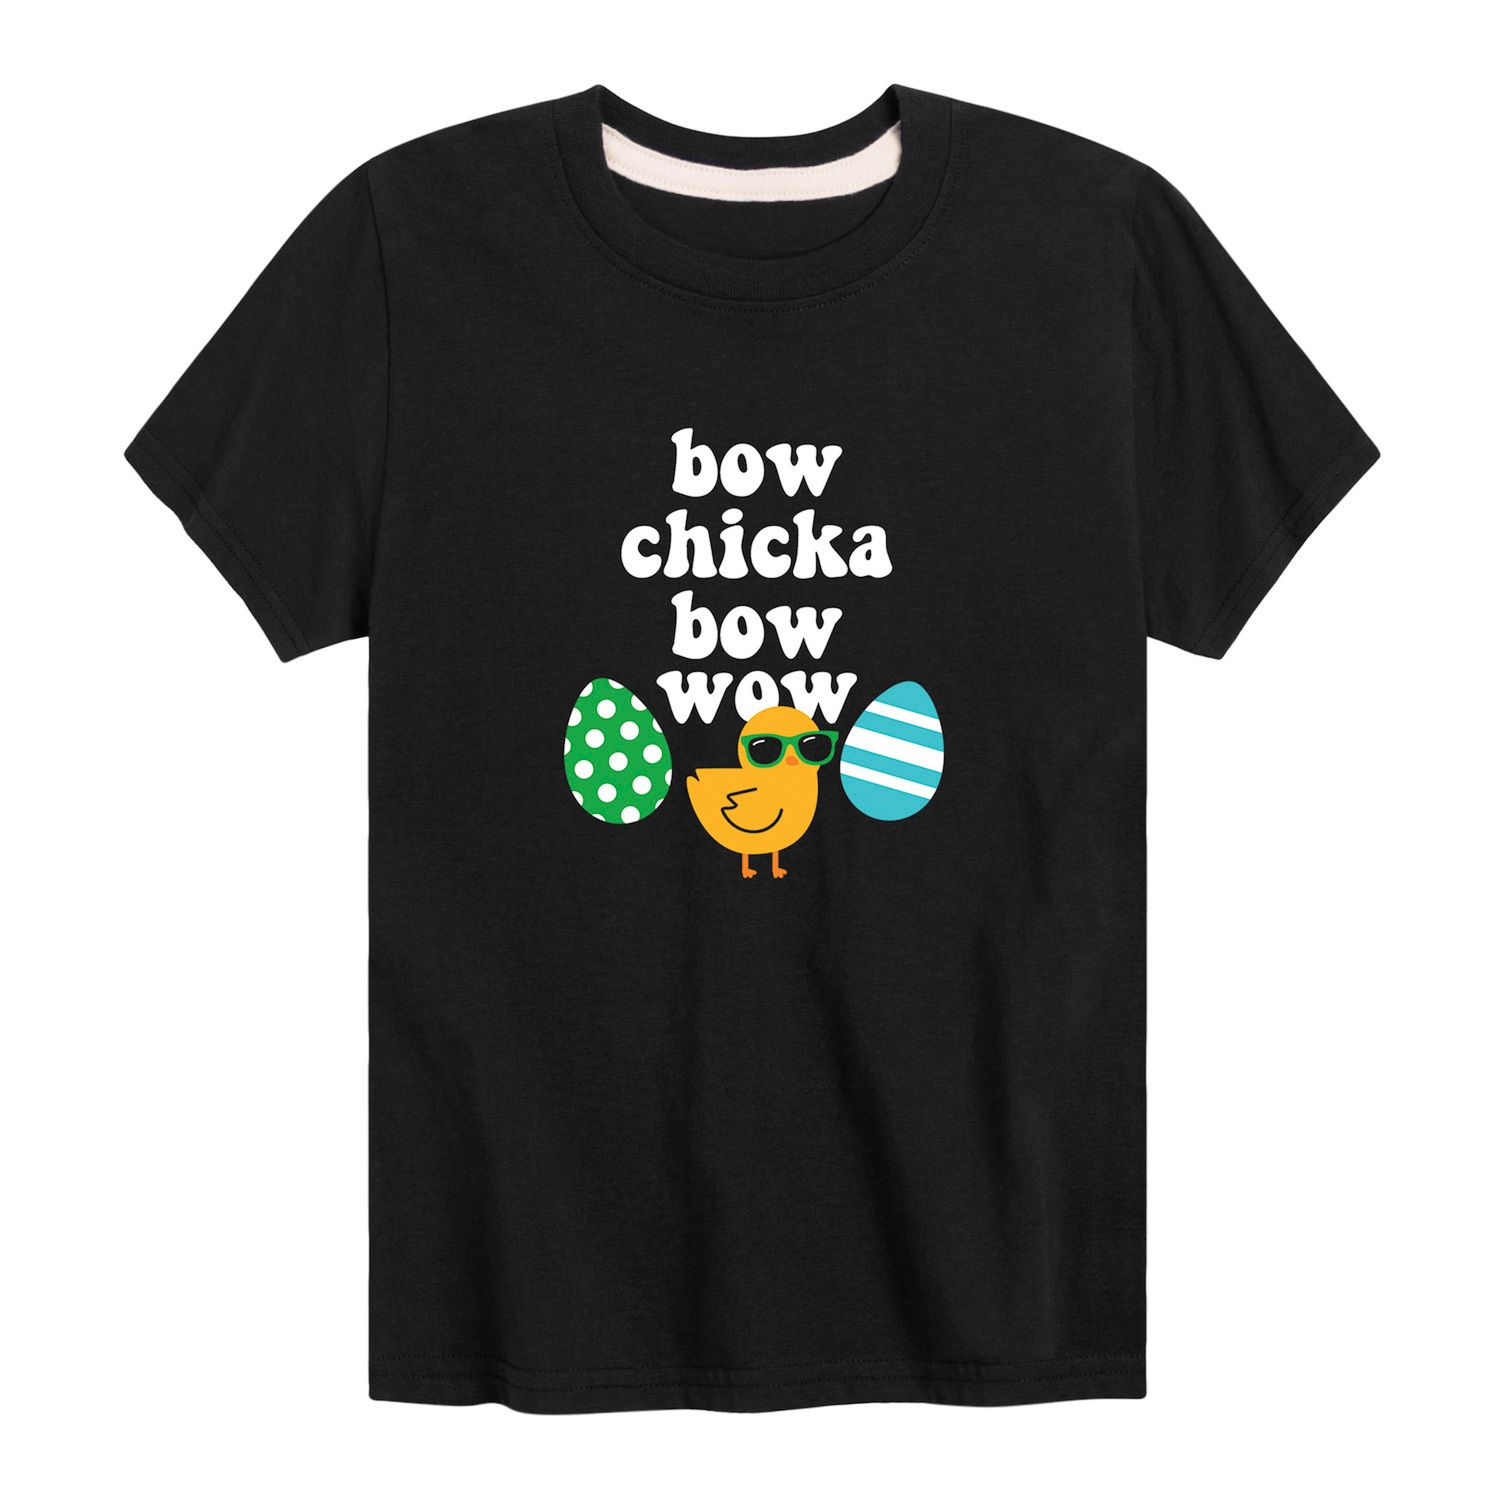 Футболка с рисунком «Пасхальный бант» для мальчиков 8–20 лет Chicka Bow Wow Licensed Character футболка с рисунком пасхальный бант для мальчиков 8–20 лет chicka bow wow licensed character